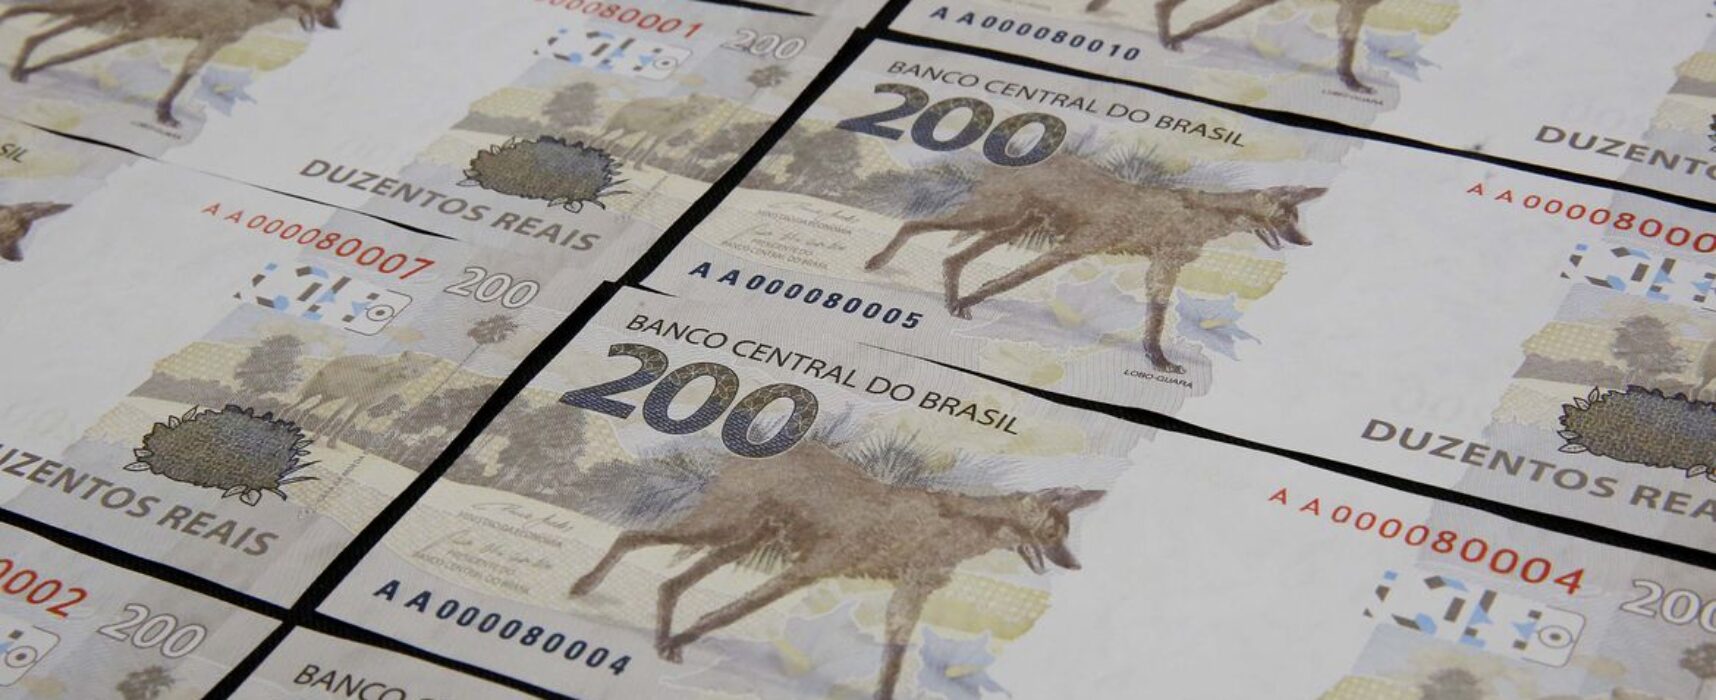 Ação da Defensoria quer que BC retire notas de R$ 200 de circulação